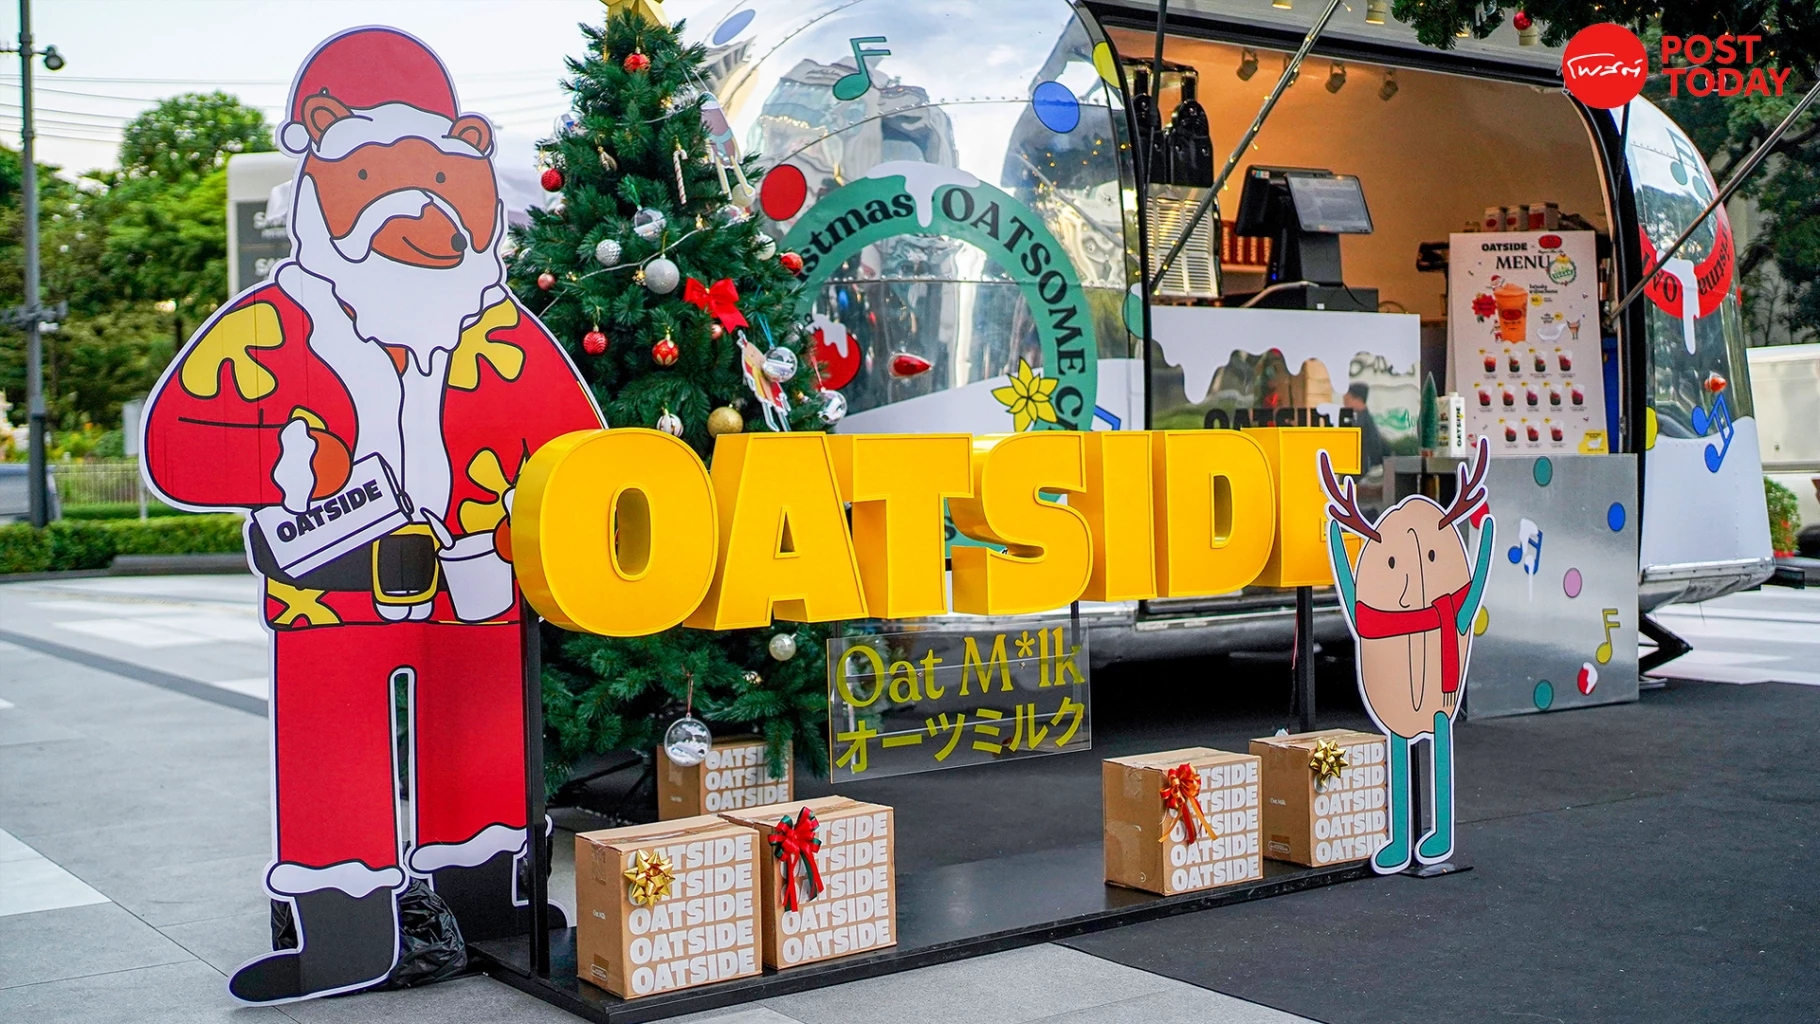 คริสต์มาสฟู้ดทรัค ‘OATSIDE’ ผนึกแบรนด์ดัง บุกออฟฟิศ เสริฟอร่อยทั่วกรุง